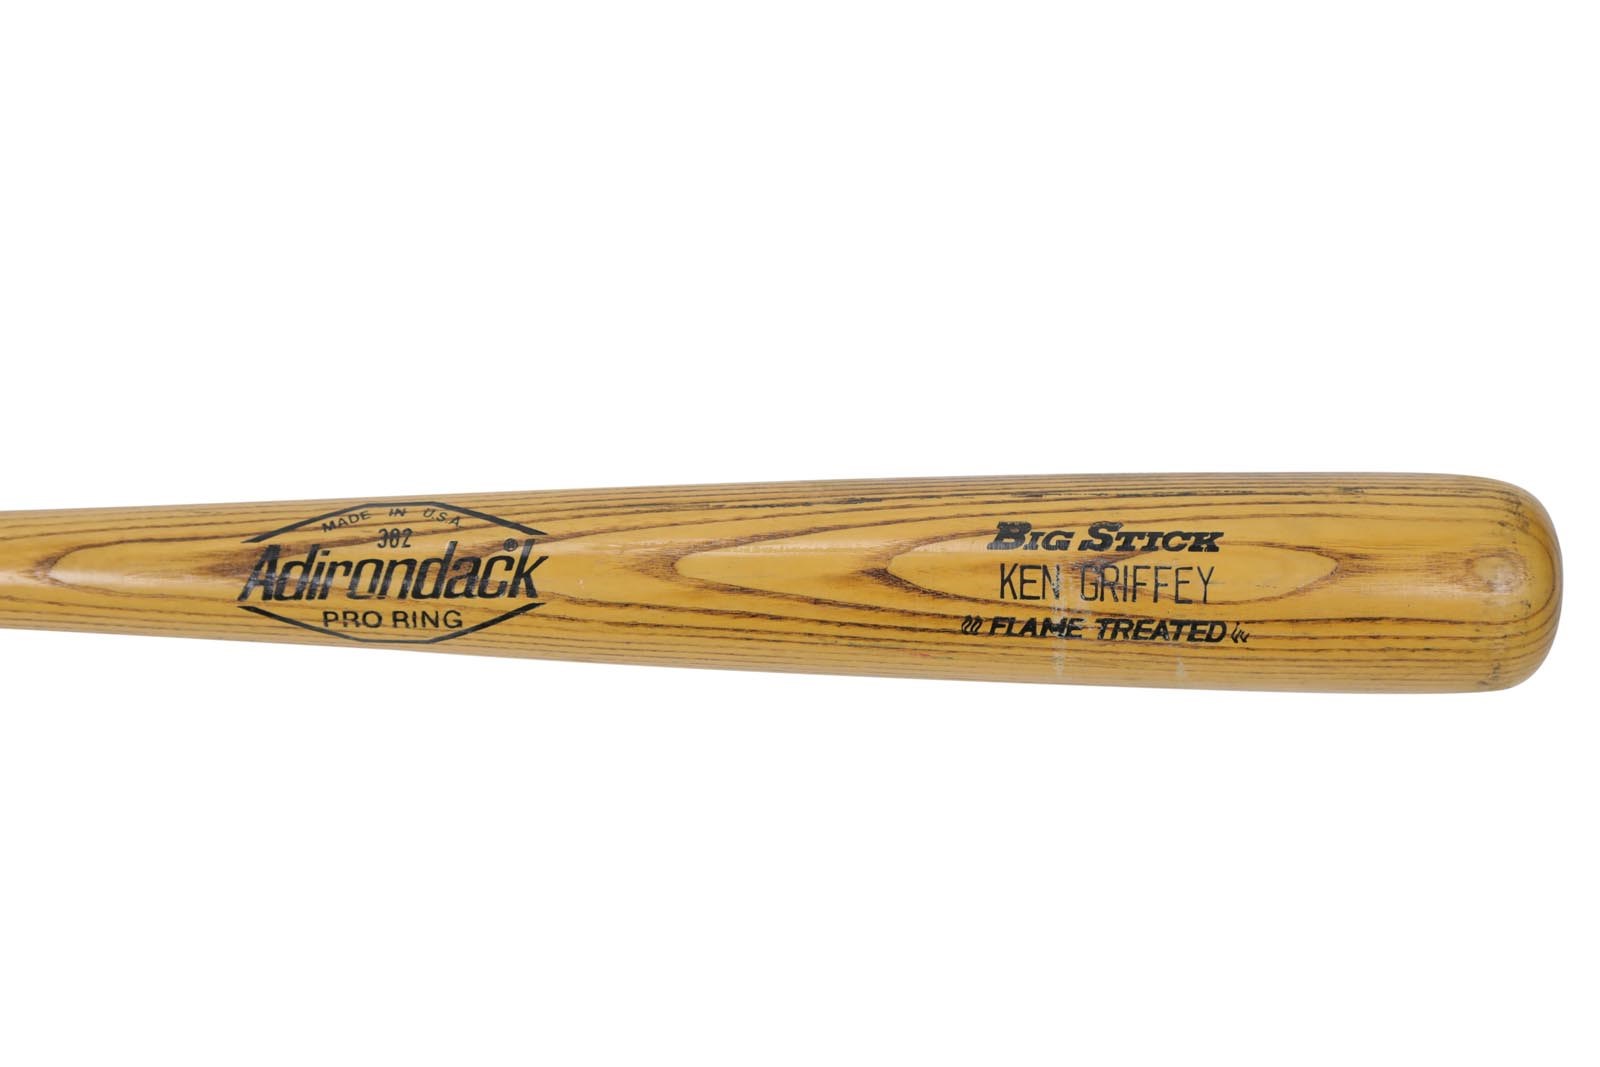 NY Yankees, Giants & Mets - 1982 Ken Griffey Sr. Yankees Game Used Bat